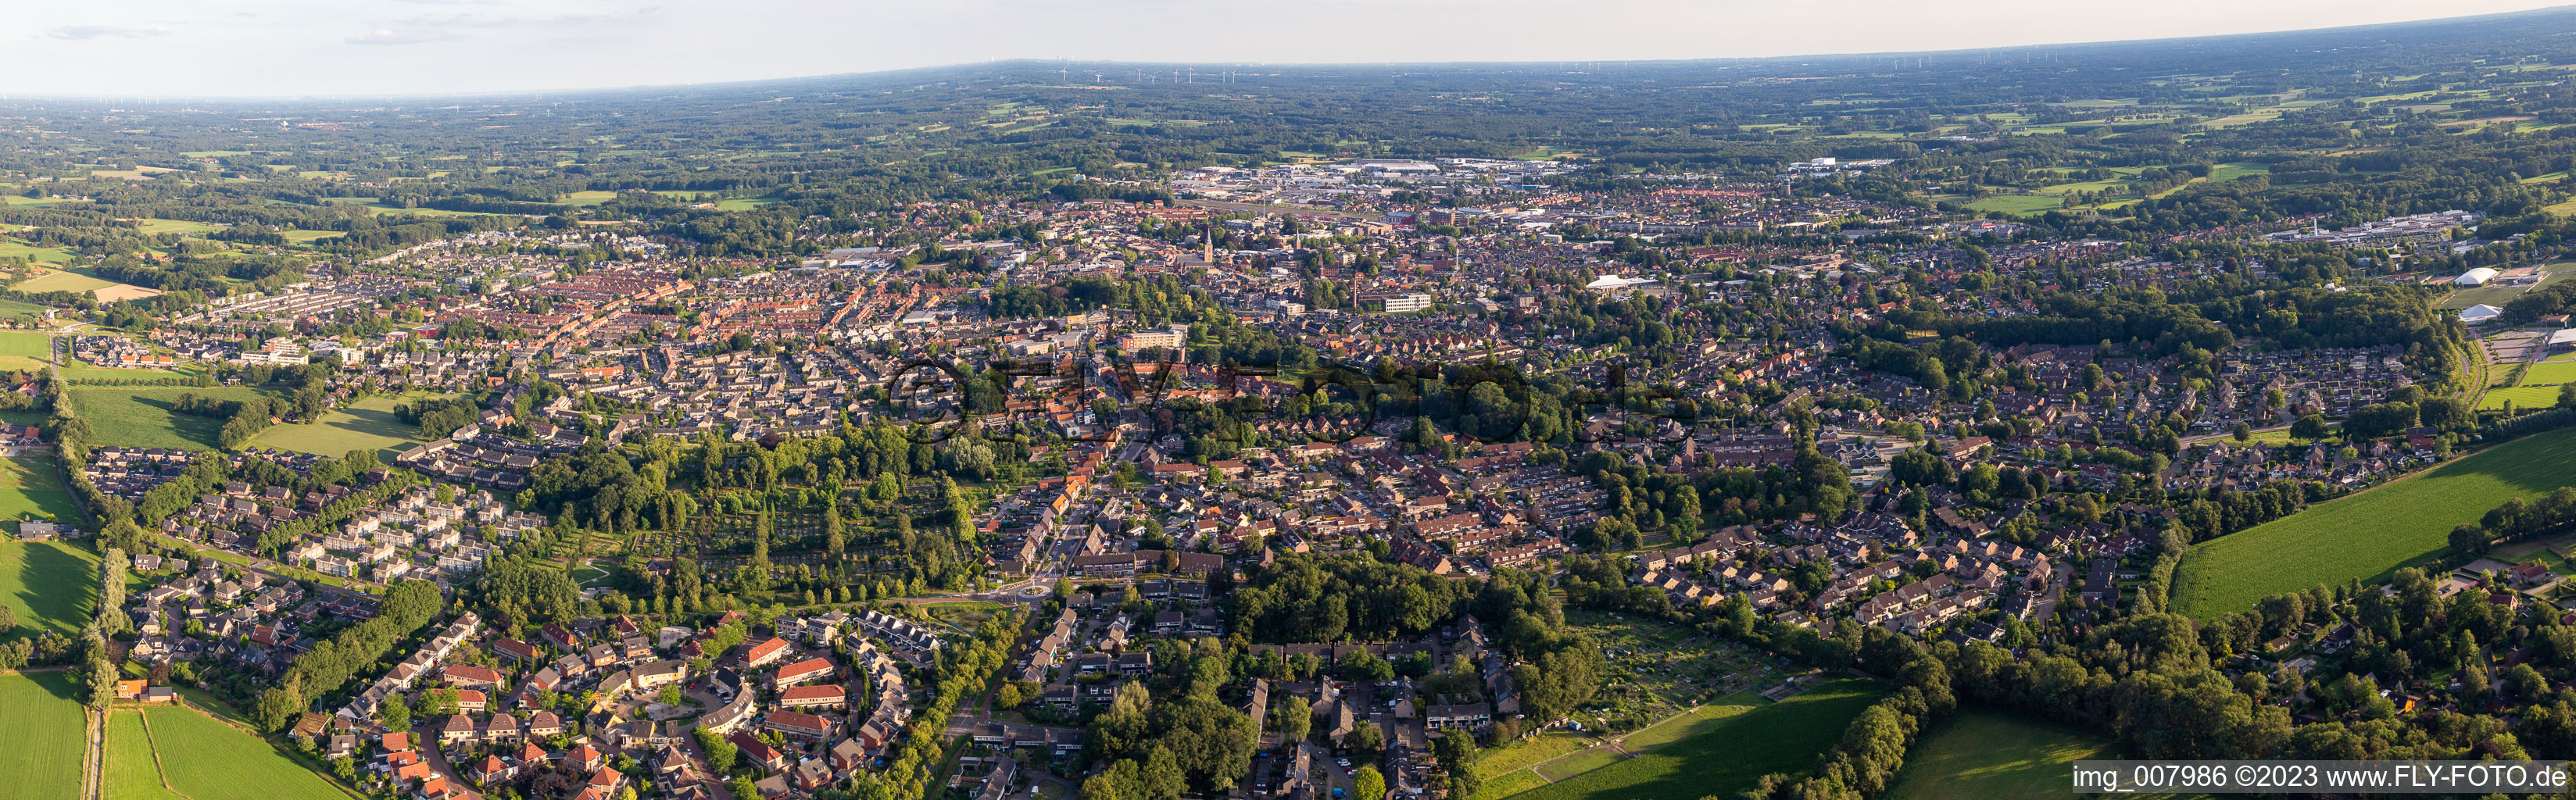 Panorama der Stadtansicht des Innenstadtbereiches in Winterswijk in Gelderland, Niederlande